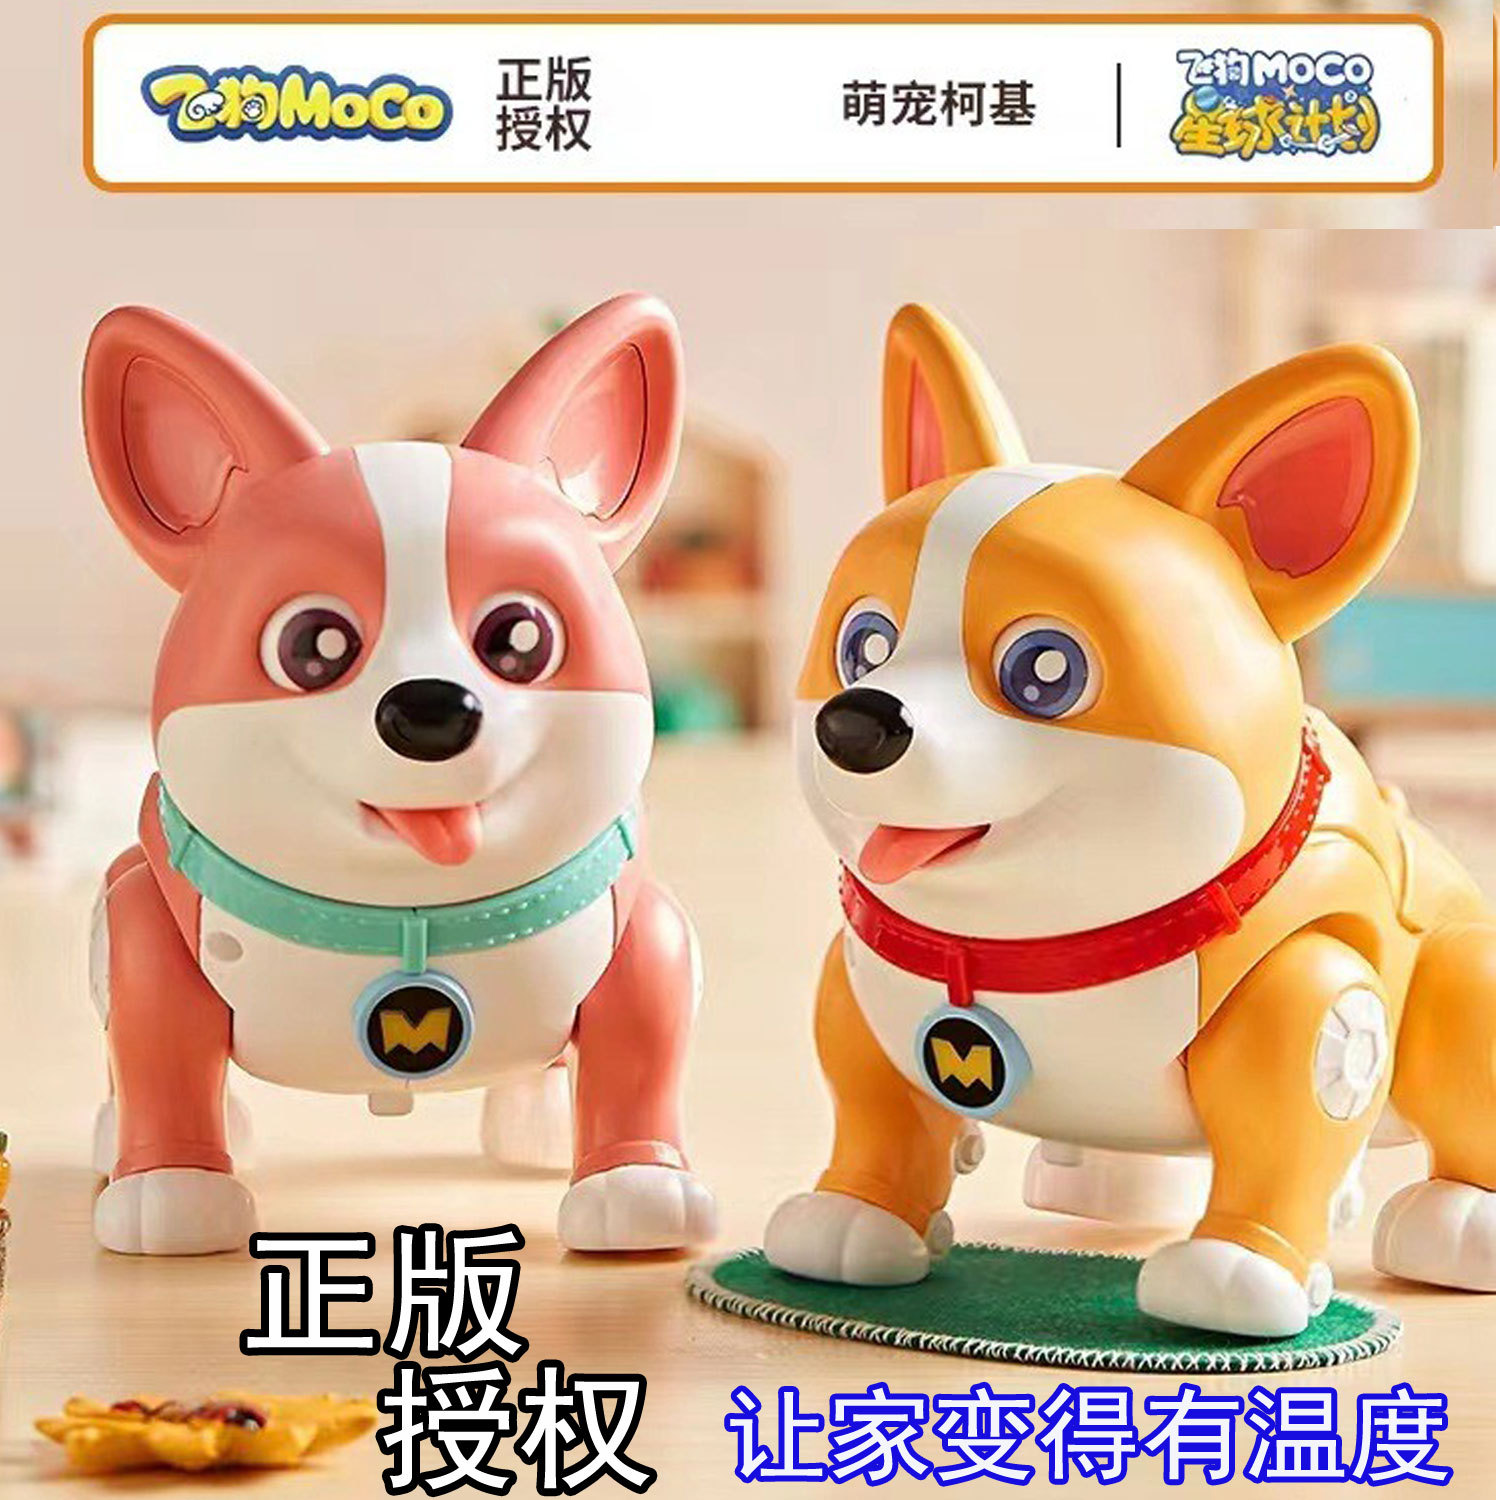 Officially Authorized Flying Dog Moco Smart Cute Pet Corgi Dog Toy Baby Educational Cross-Border Amazon Toy